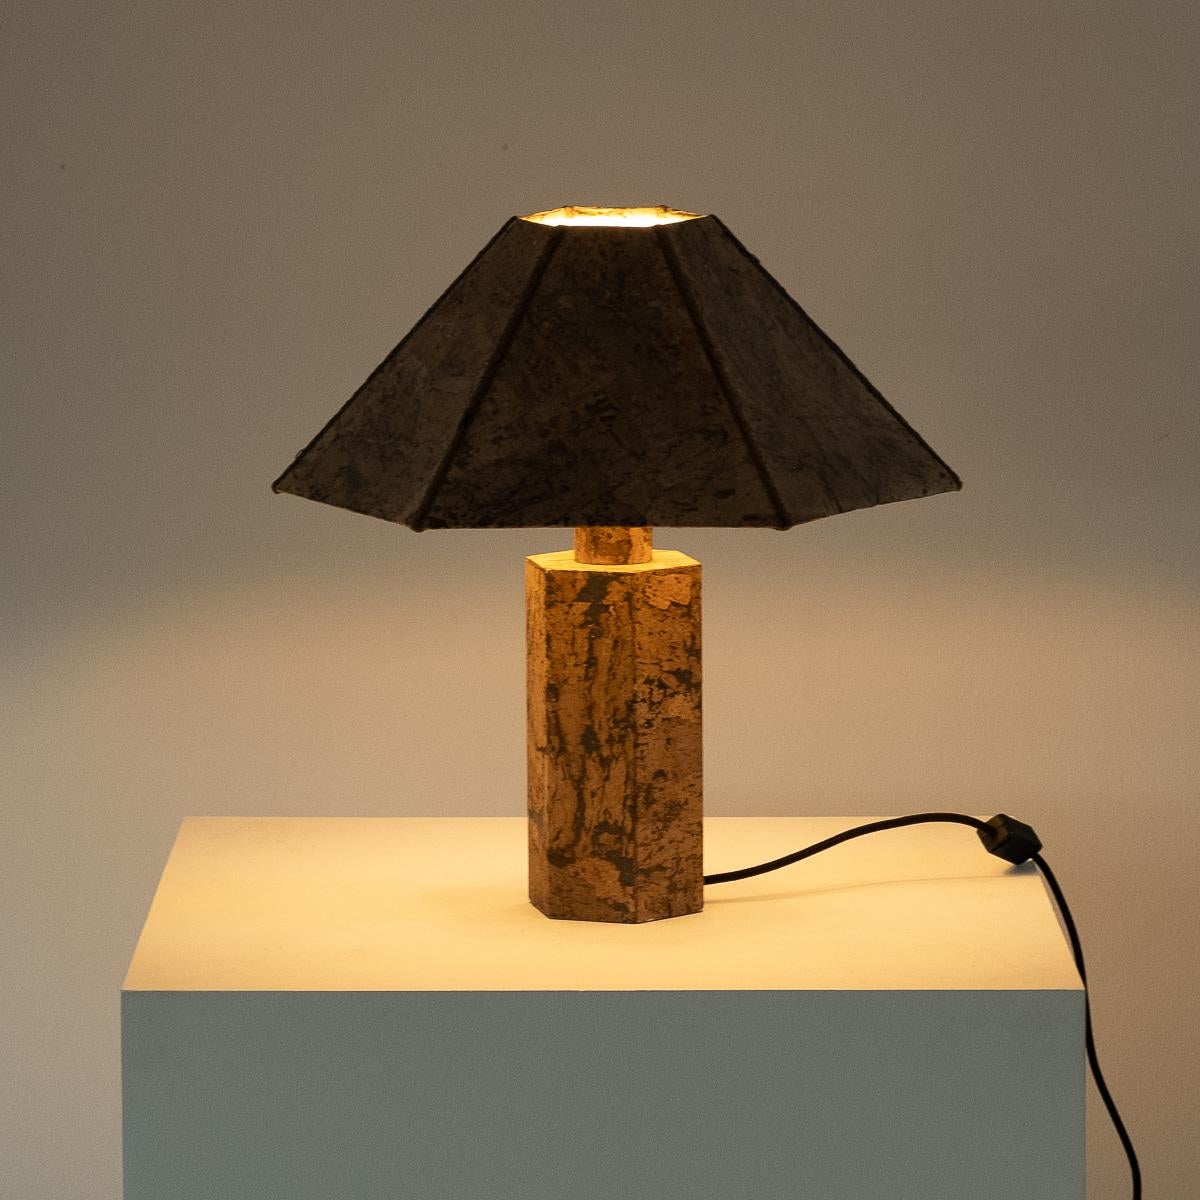 German Ingo Maurer Style Cork Lamp, circa 1970